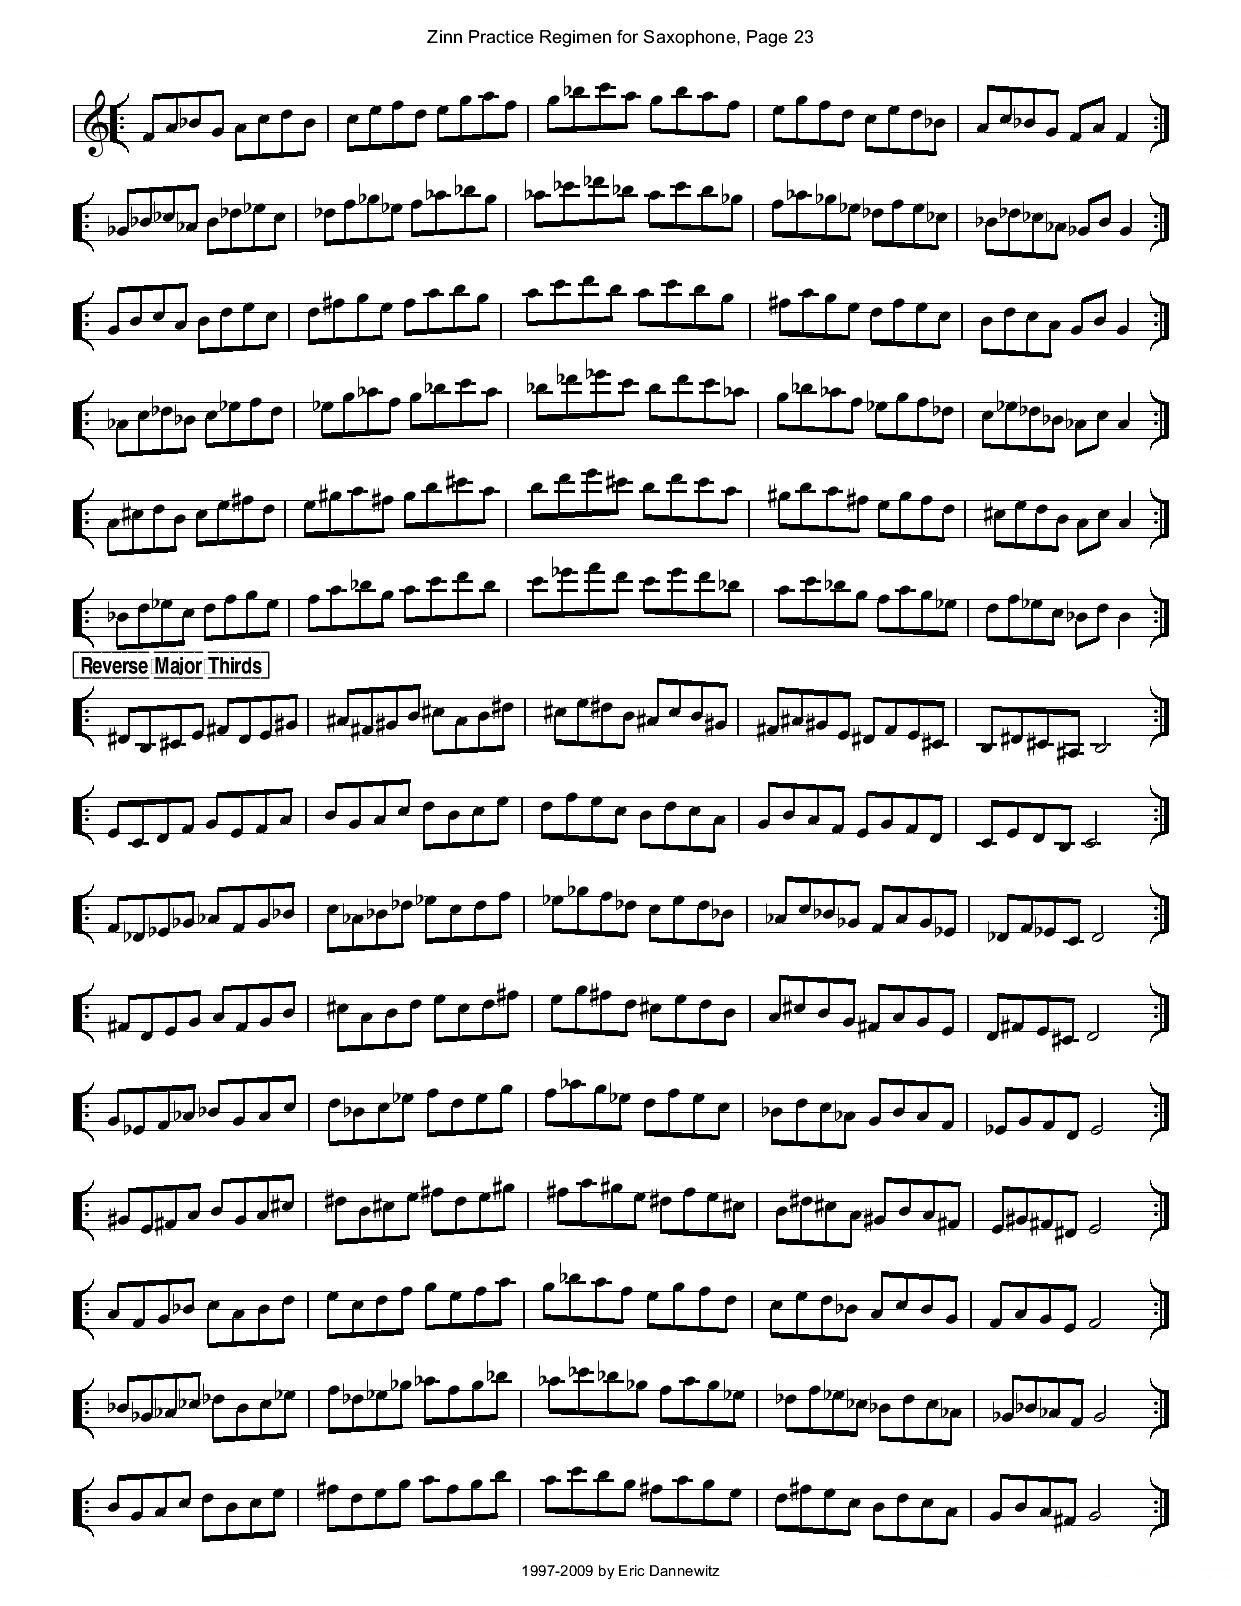 ZinnRegimenSax2009练习曲萨克斯曲谱（图26）